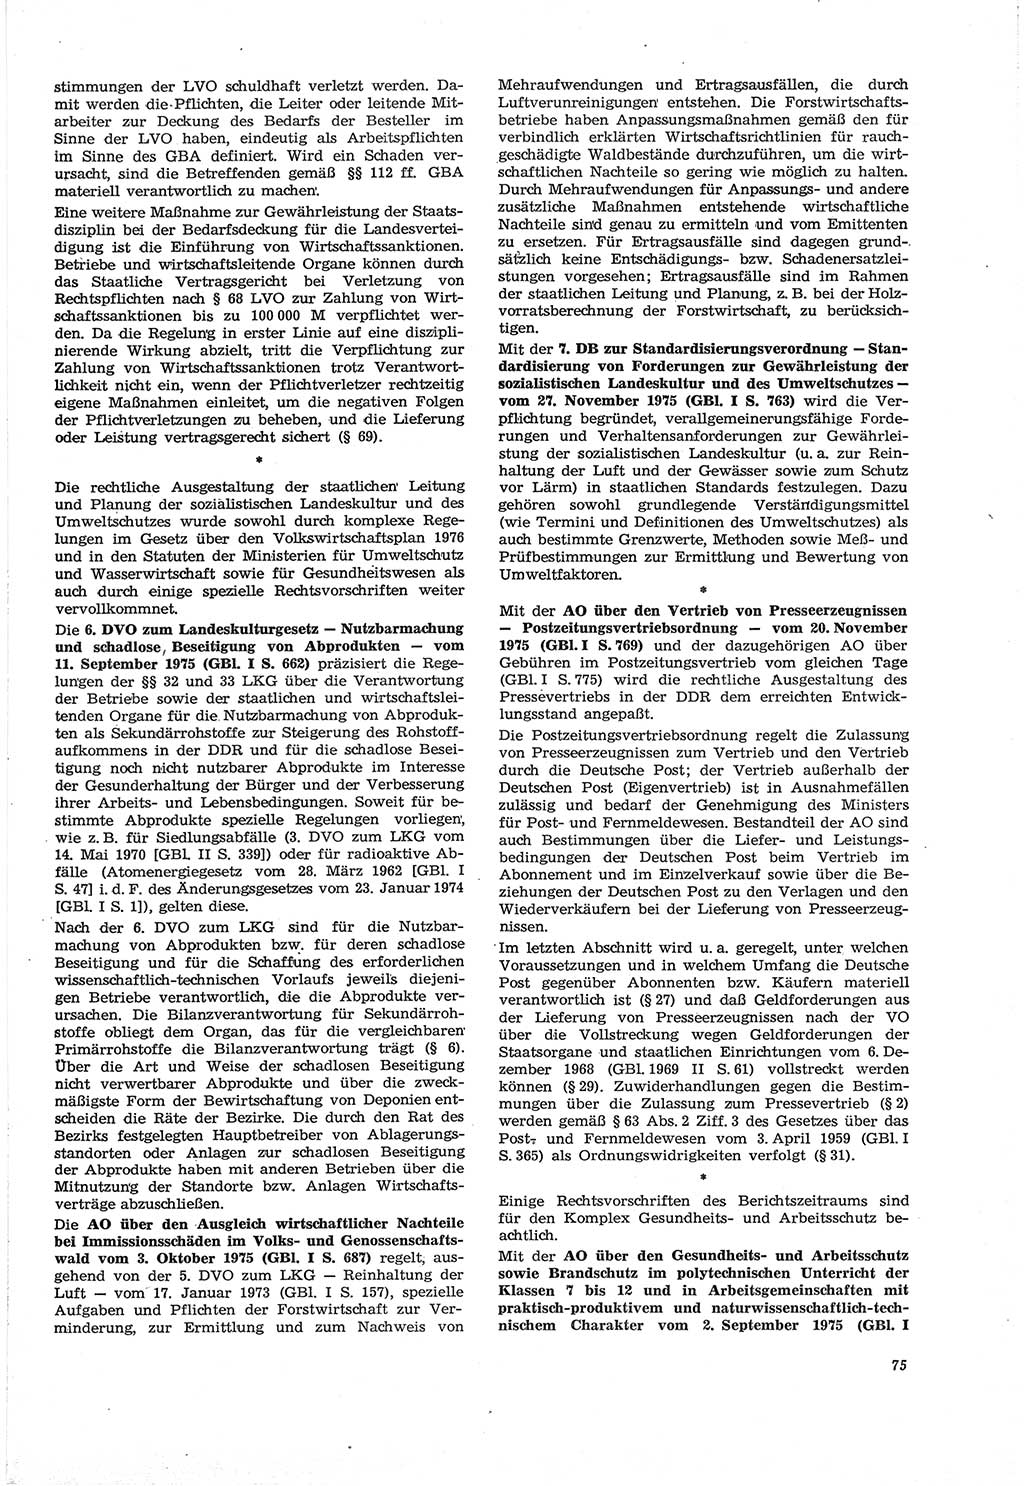 Neue Justiz (NJ), Zeitschrift für Recht und Rechtswissenschaft [Deutsche Demokratische Republik (DDR)], 30. Jahrgang 1976, Seite 75 (NJ DDR 1976, S. 75)